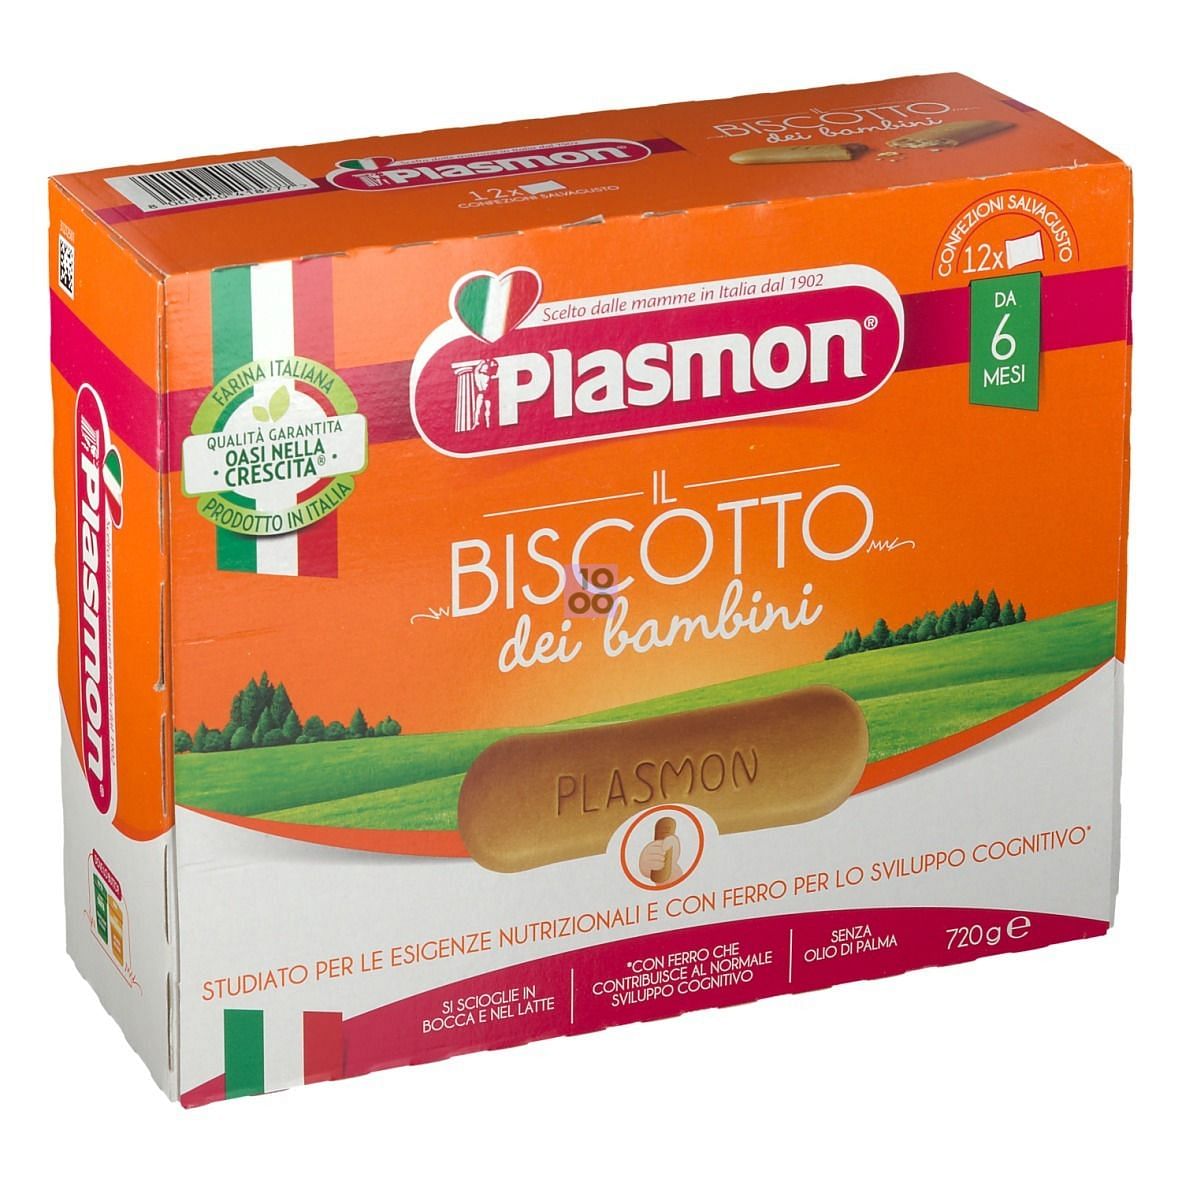 Biscotti Plasmon € 6,00 prezzo Farmacia Fatigato